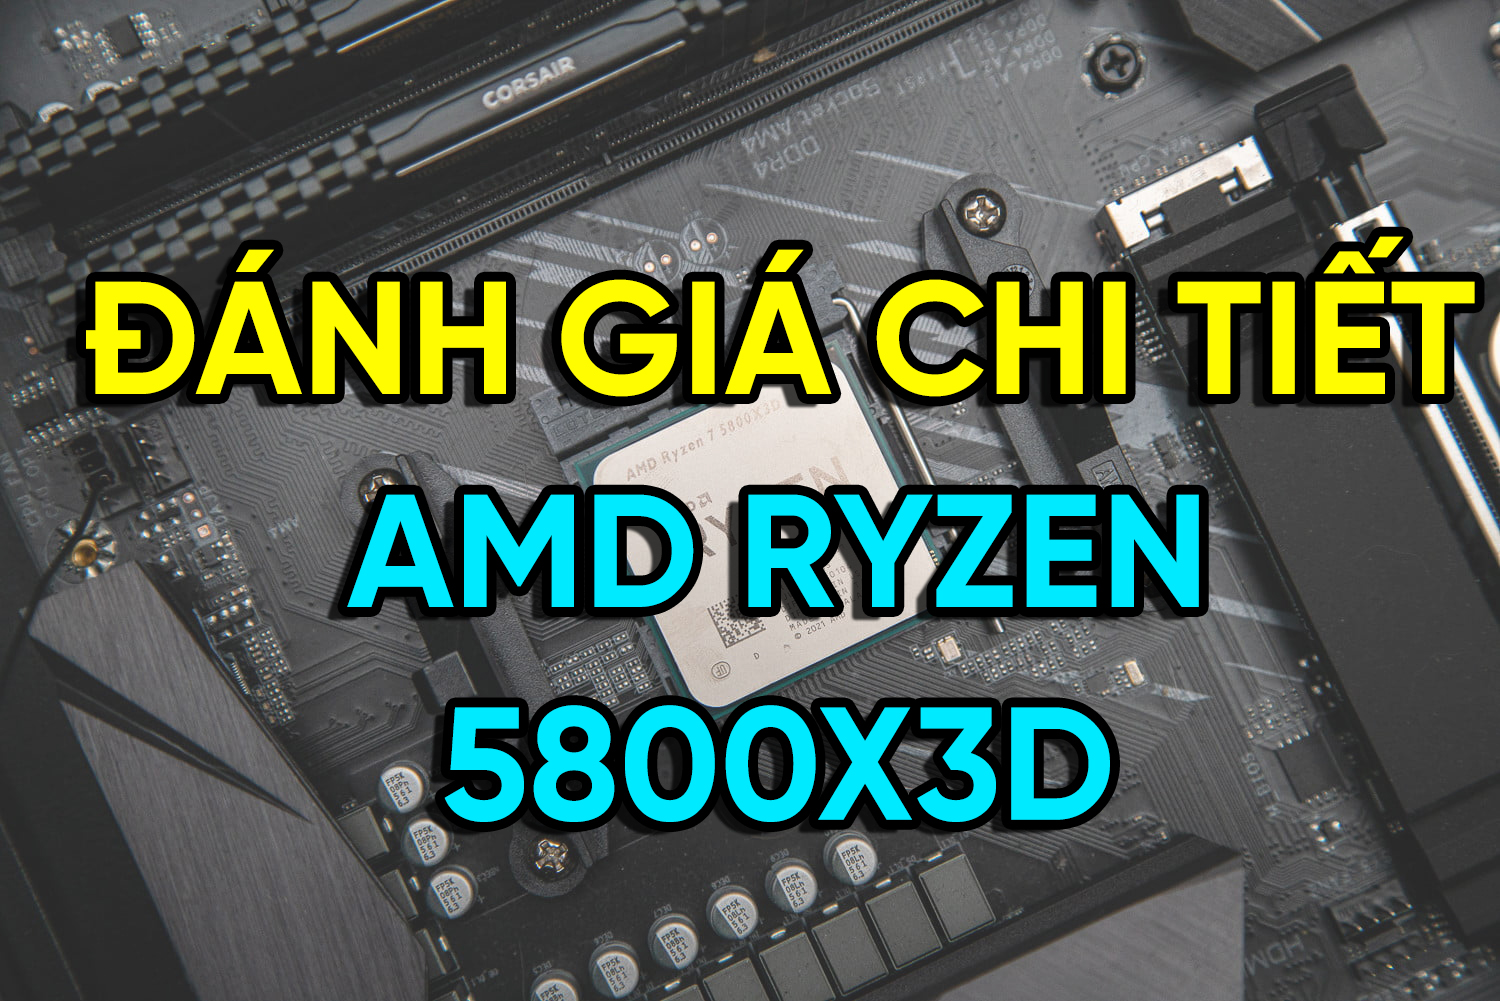 Chi tiết AMD Ryzen 5800X3D - Dành thiết kế đồ hoạ tốt không